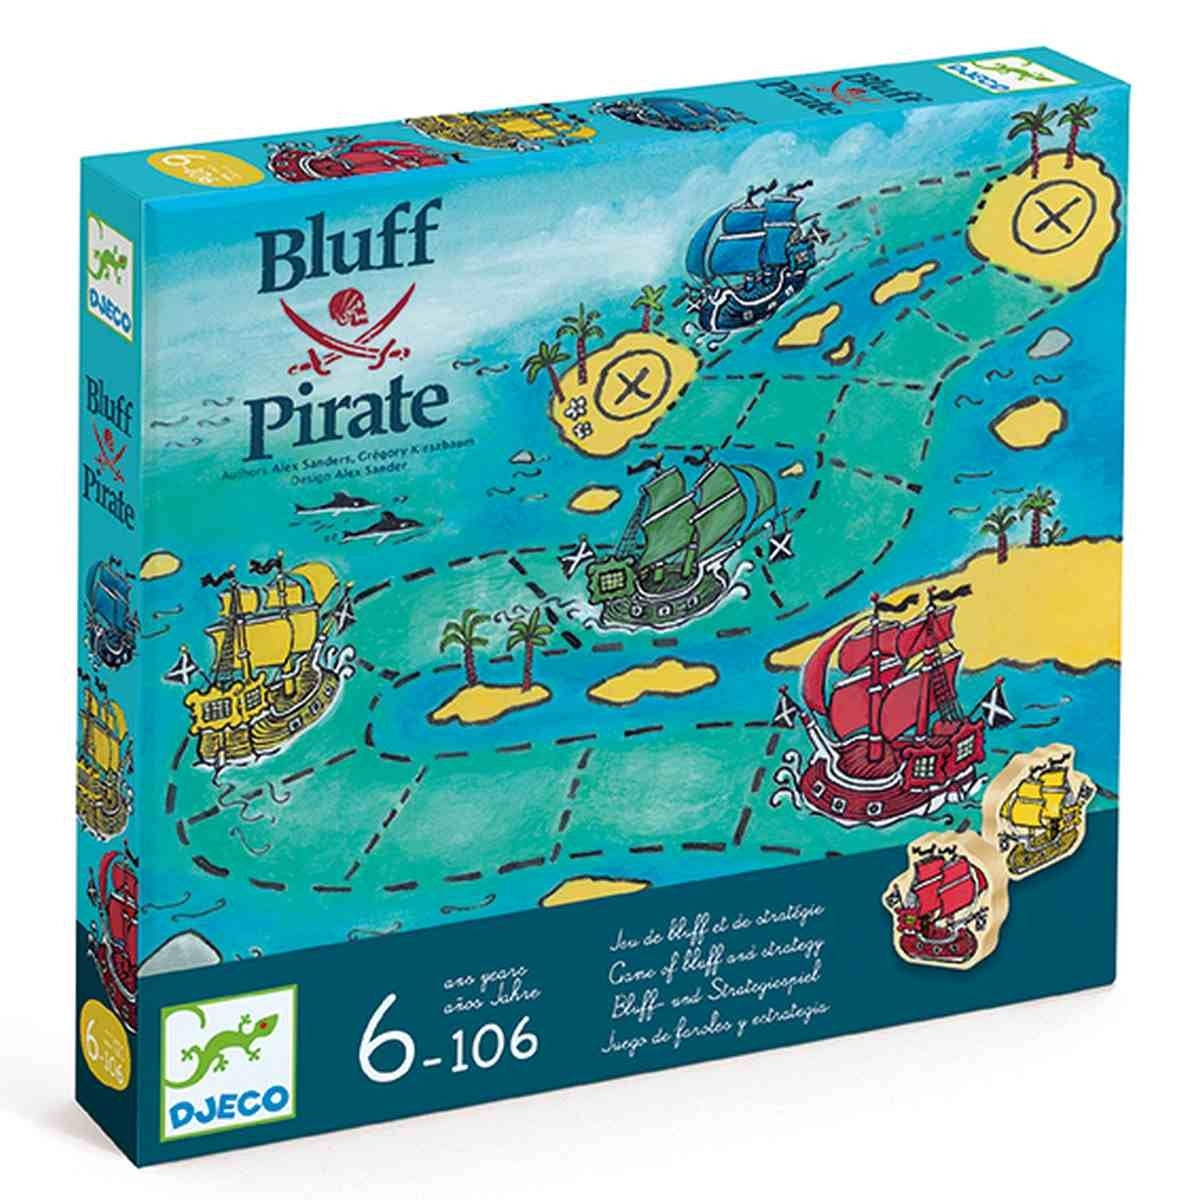 Brettspiel Bluff Pirate Stimmung und Bluff | Djeco